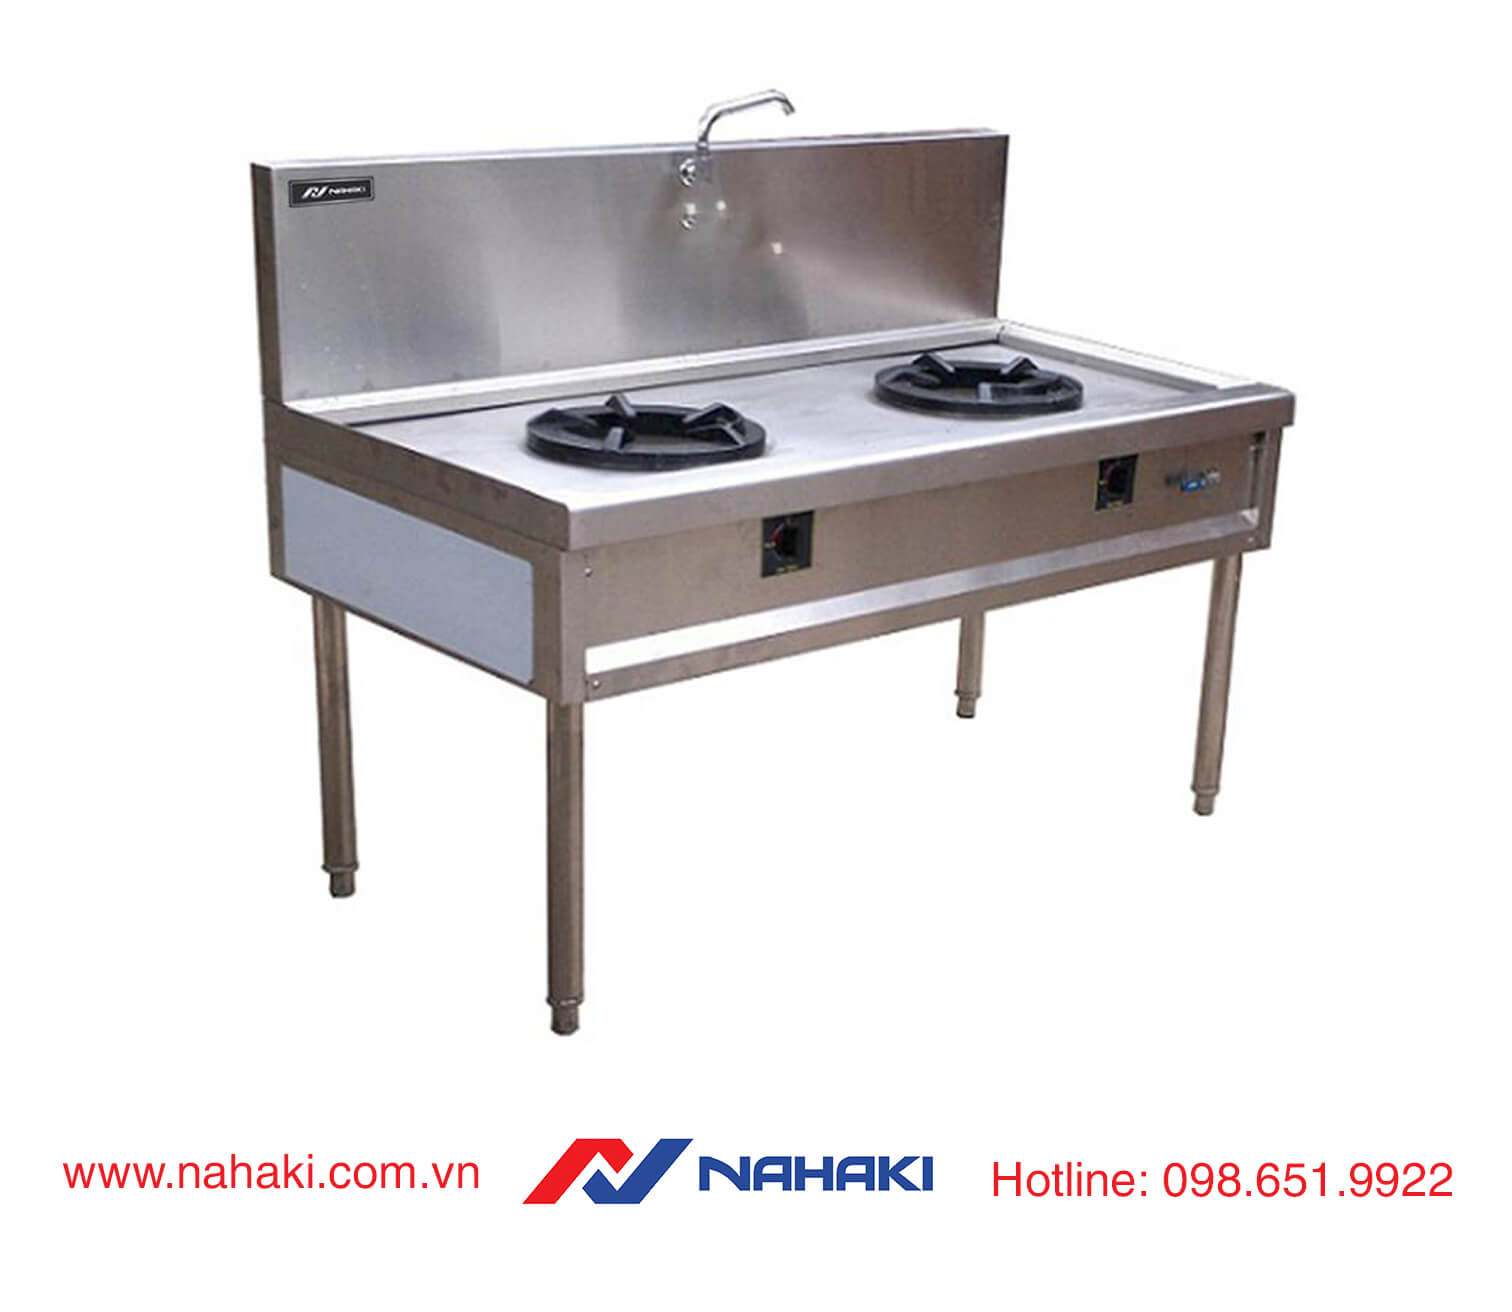 Các thiết bị Inox bếp công nghiệp chất lượng